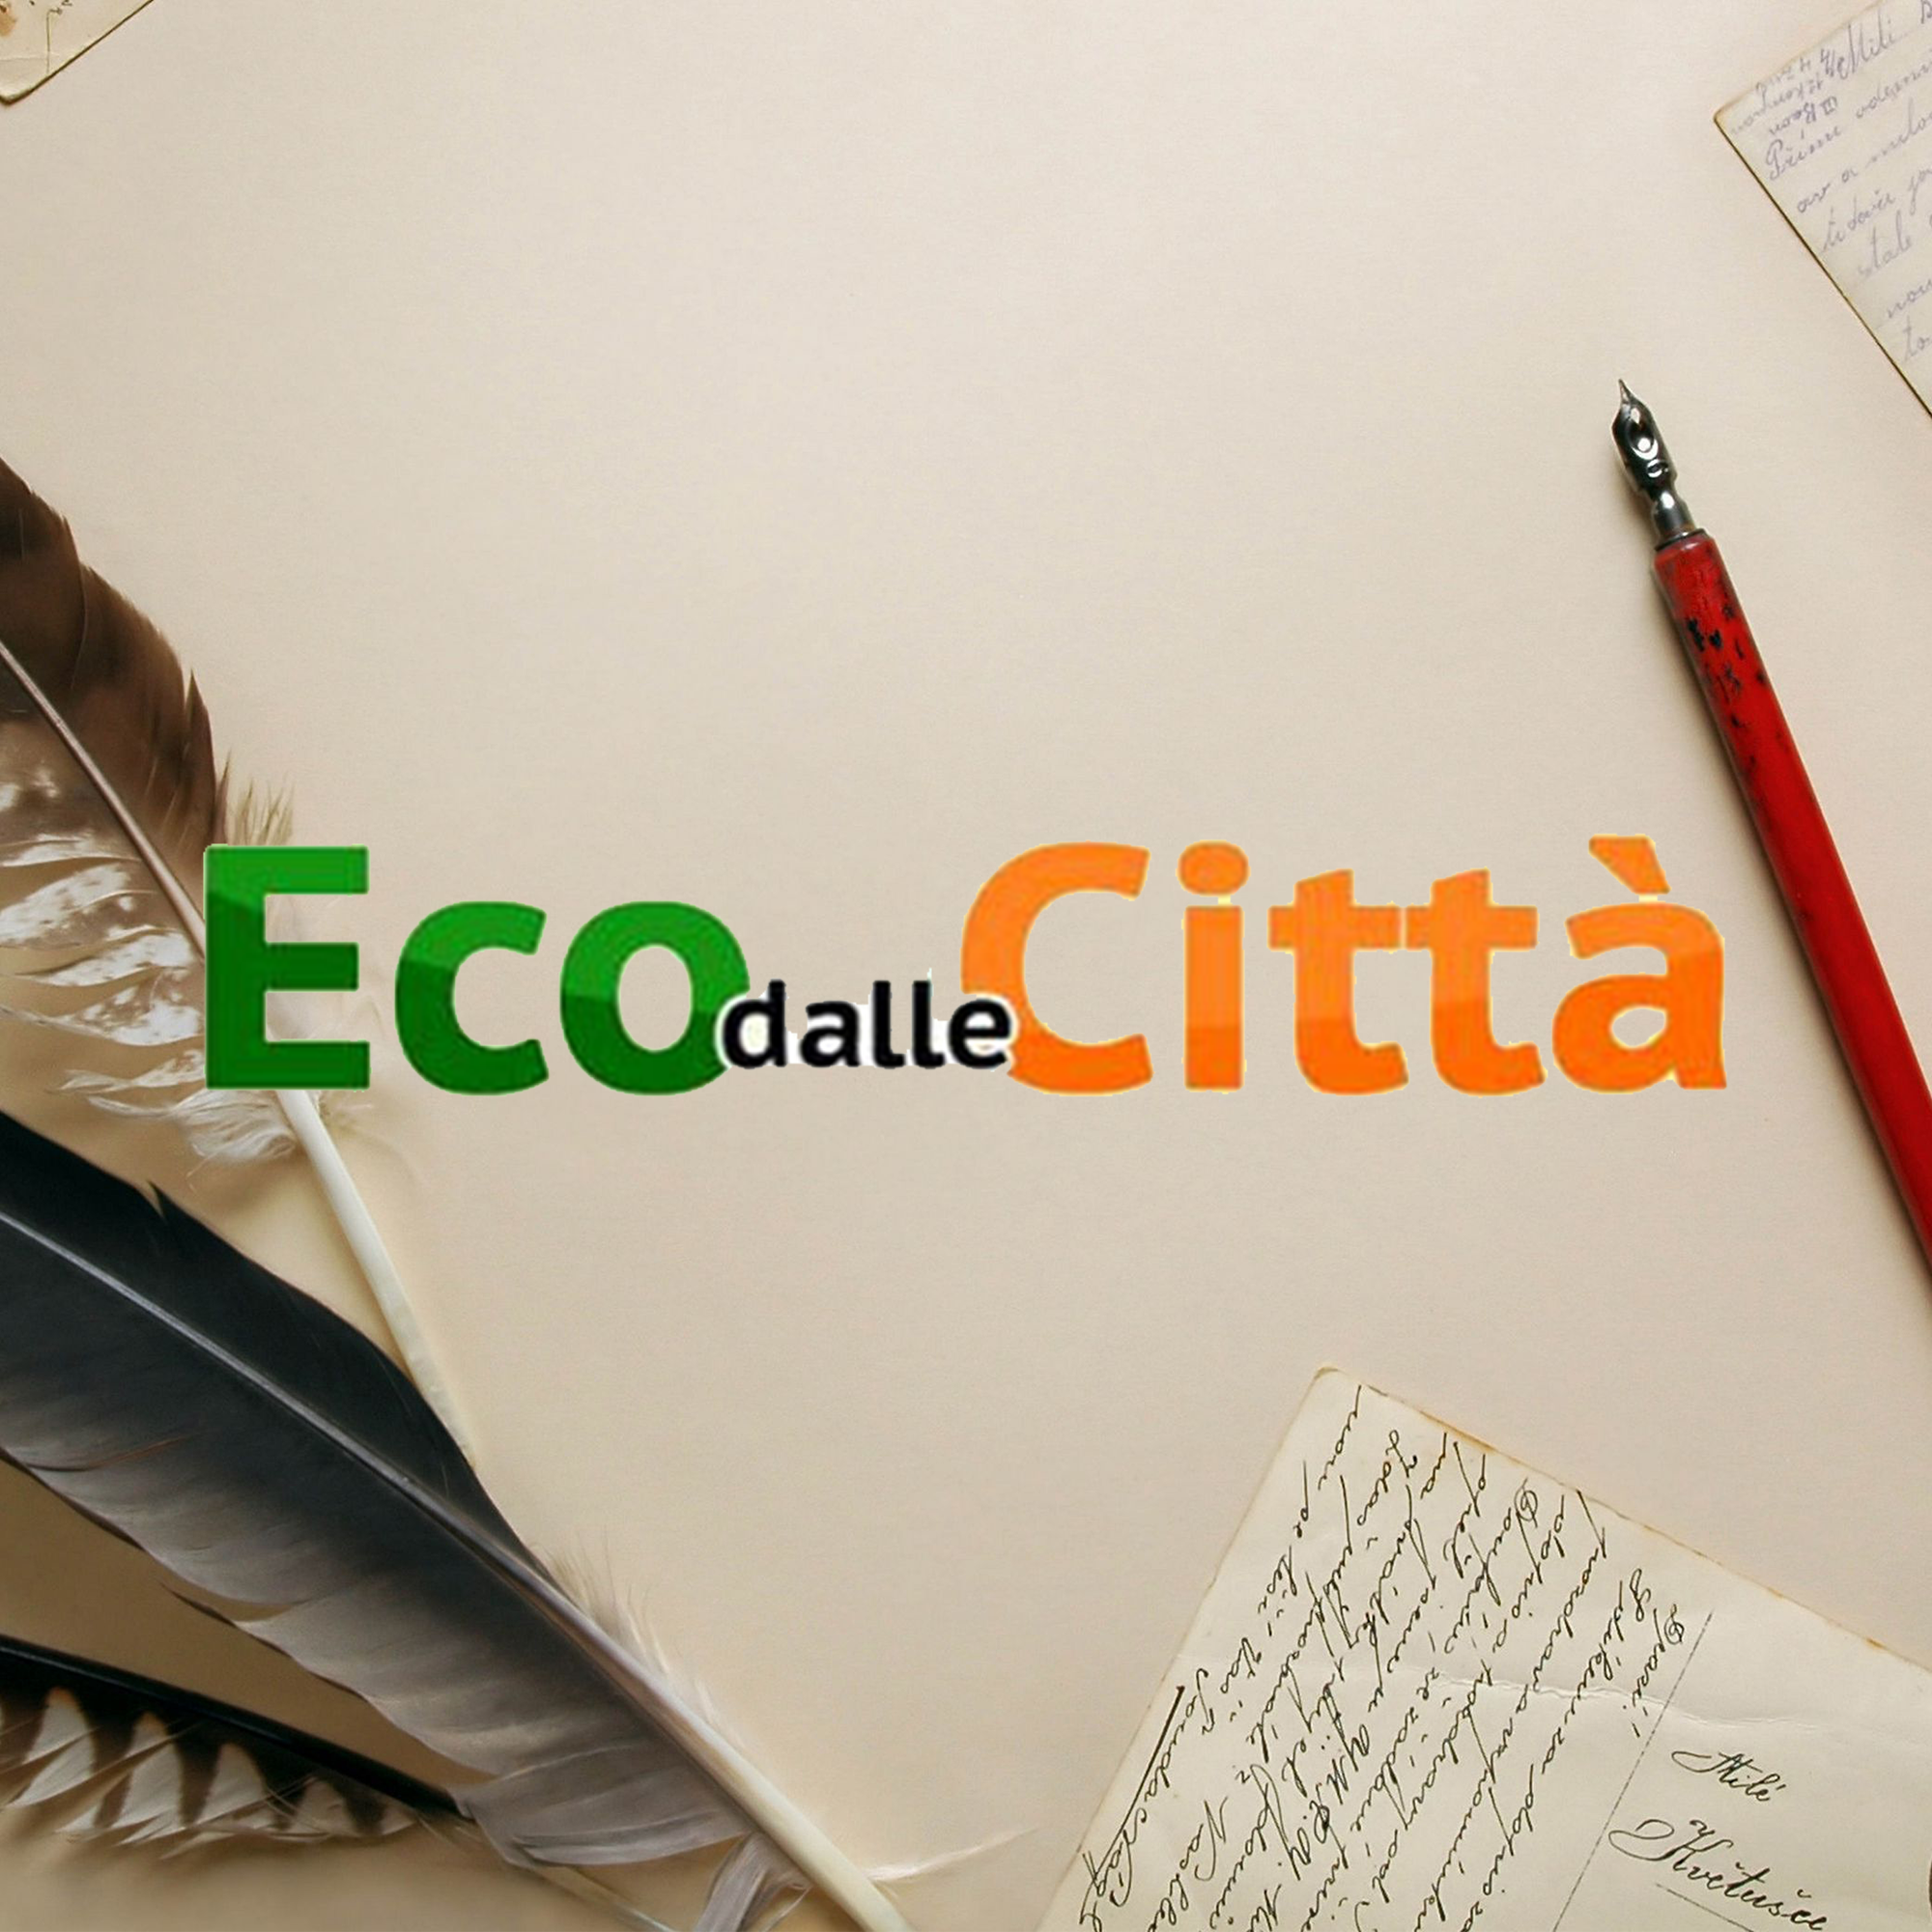 “Promuovere lettura su carta soluzione migliore per un uso più equilibrato del digitale”. Federazione Carta Grafica e Comieco a Book City Milano 2022